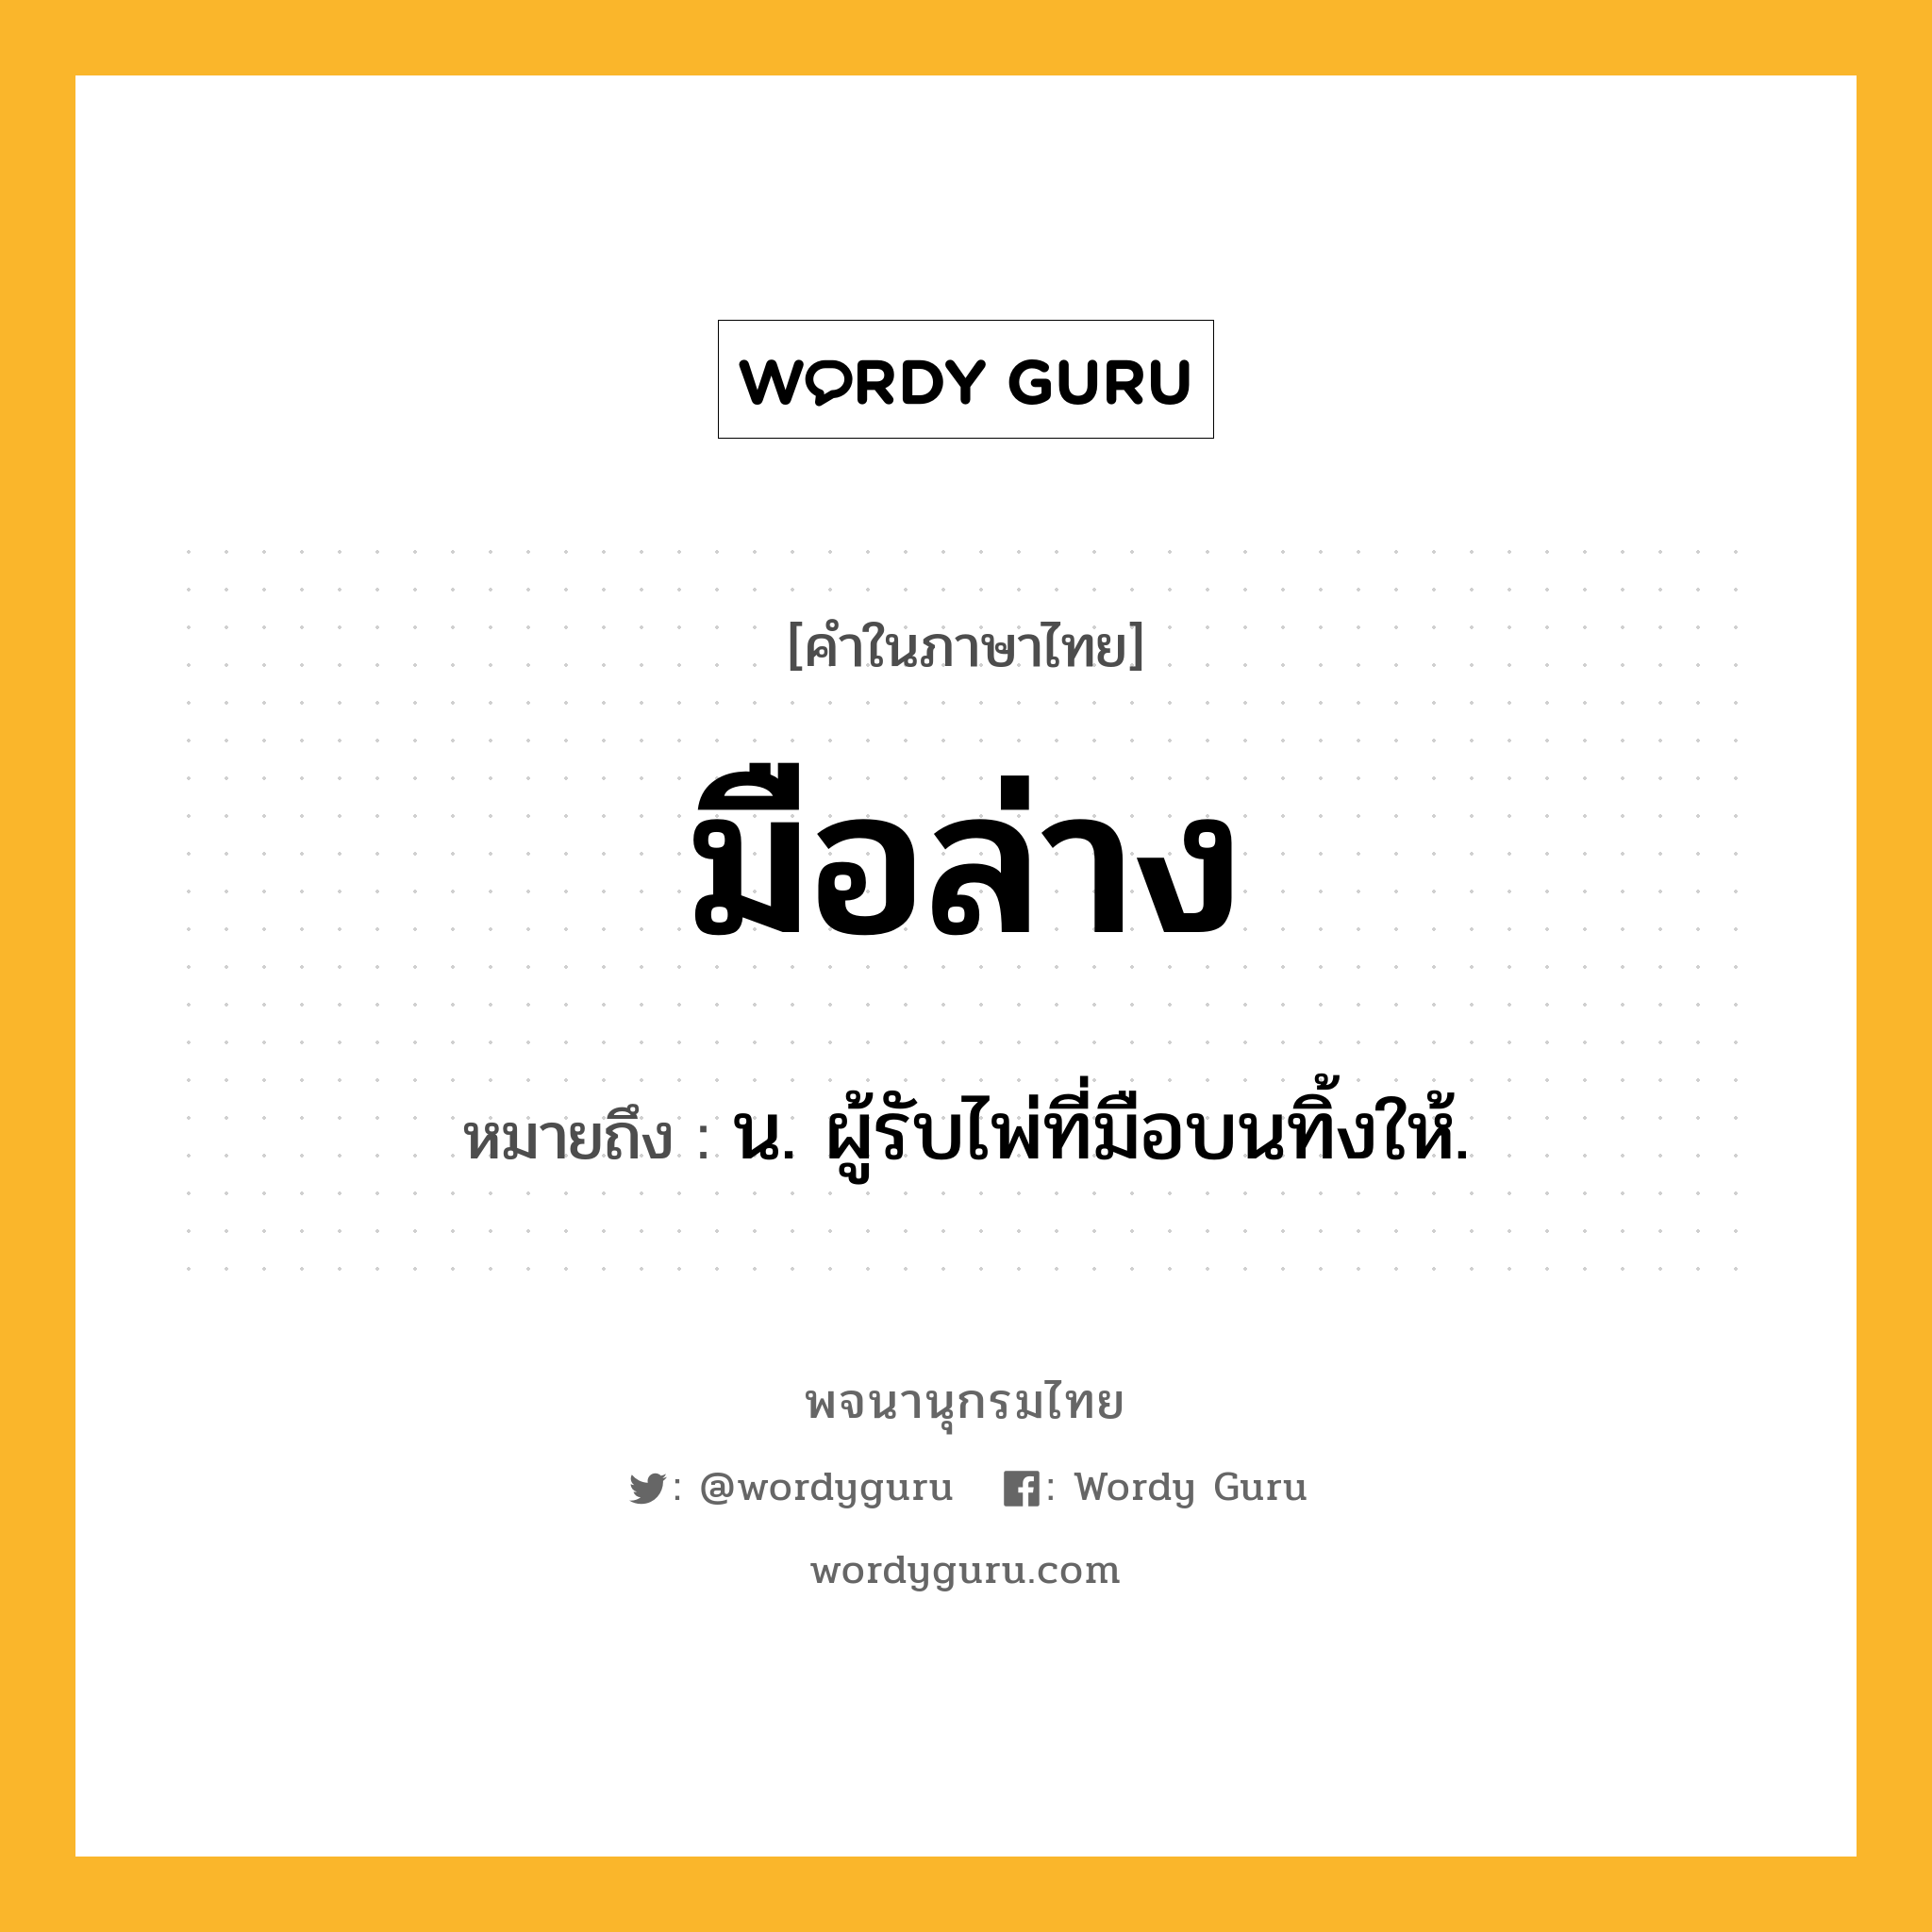 มือล่าง ความหมาย หมายถึงอะไร?, คำในภาษาไทย มือล่าง หมายถึง น. ผู้รับไพ่ที่มือบนทิ้งให้.